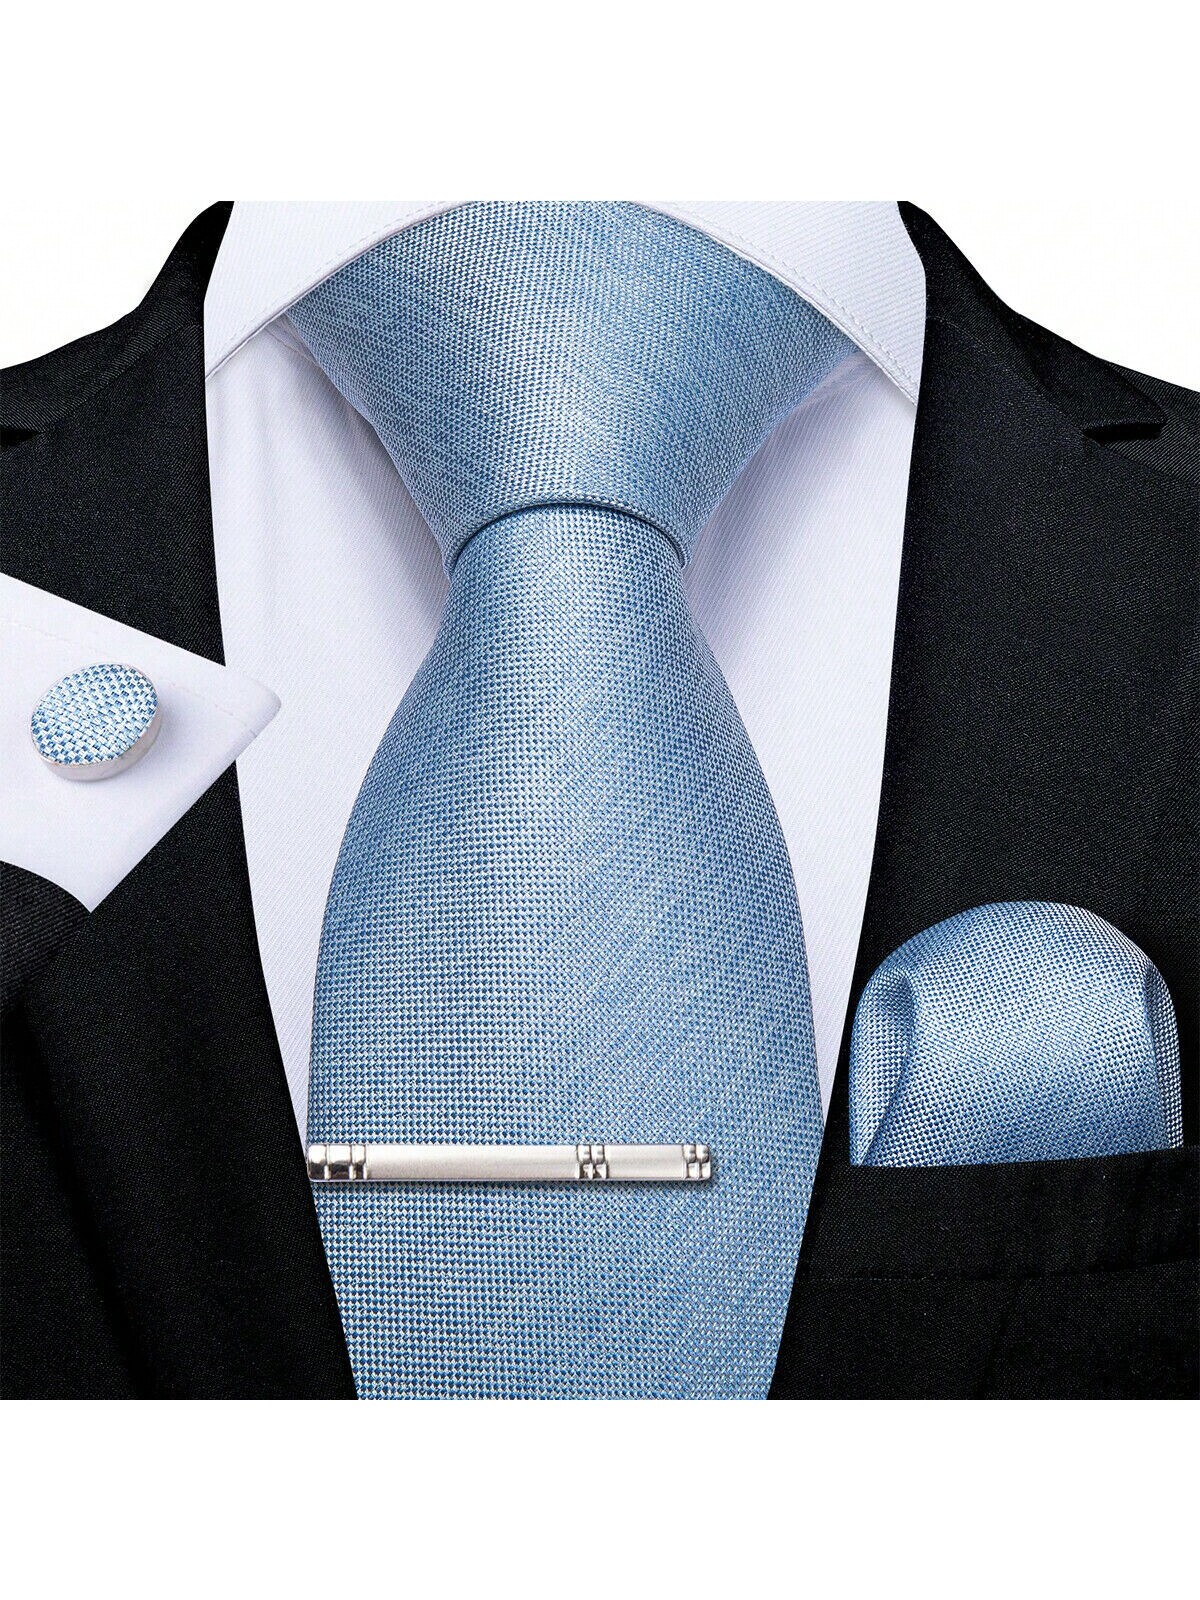 DiBanGu мужской галстук шелковый однотонный свадебный синий галстук карманные квадратные запонки клип набор Рождество 4 шт., голубые подарочная упаковка мужской брендовый роскошный галстук свадебный квадратный карманный мужские галстуки шелковый галстук набор запоно